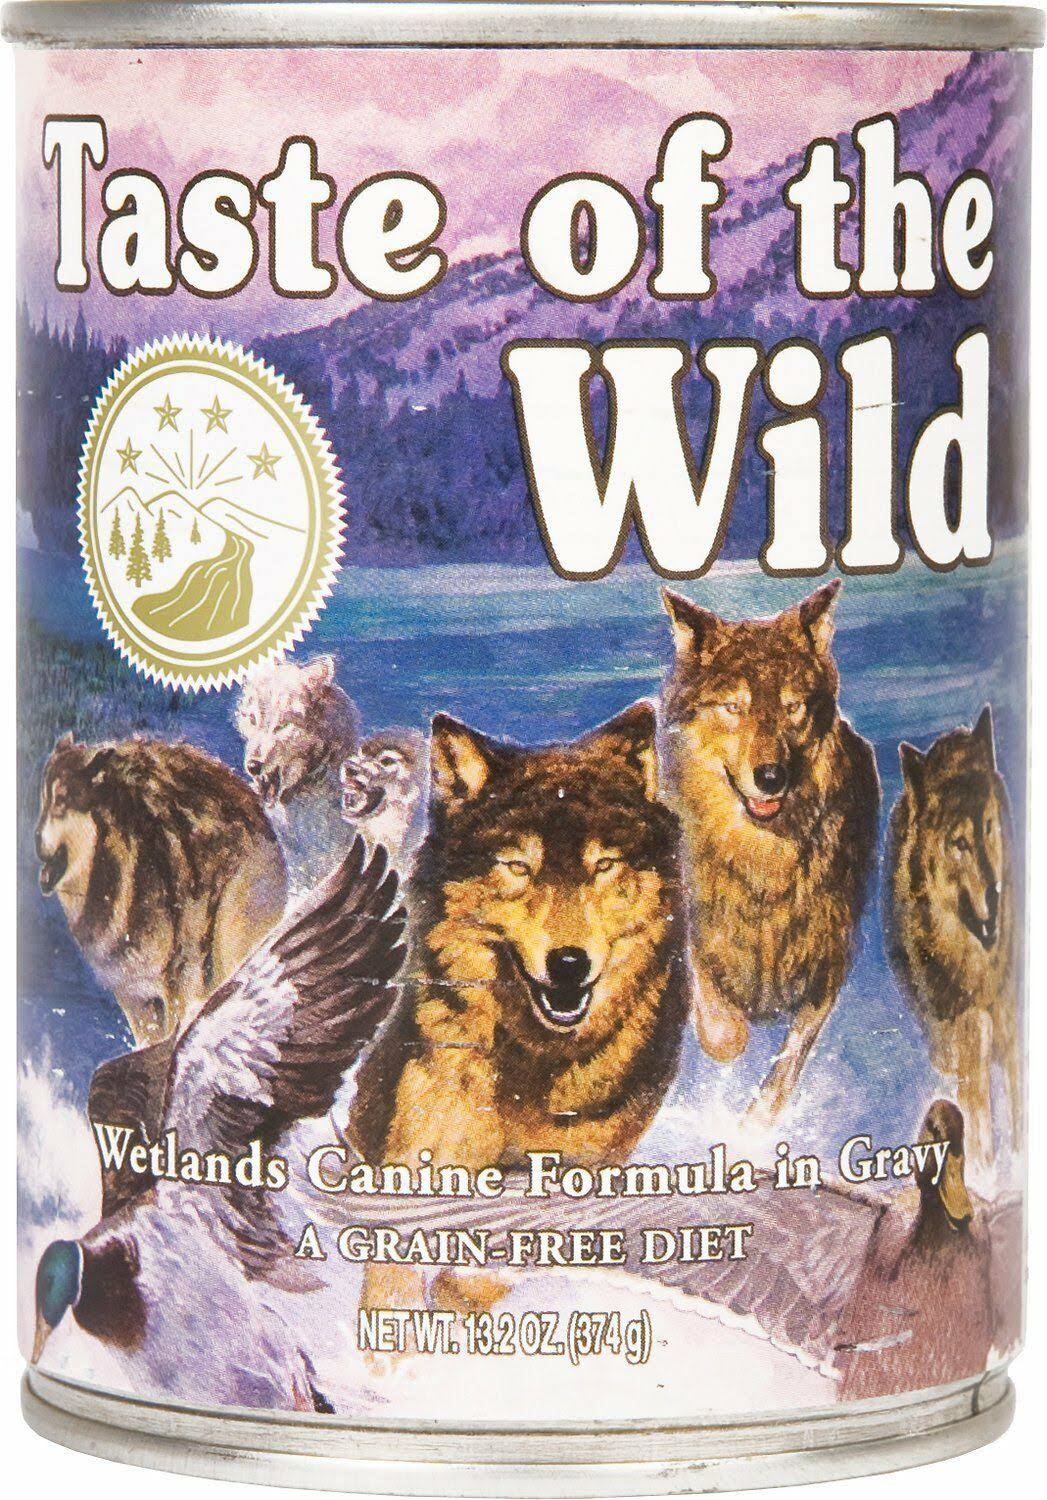 Taste of The Wild Dog Wetlands in Gravy 374g x 12